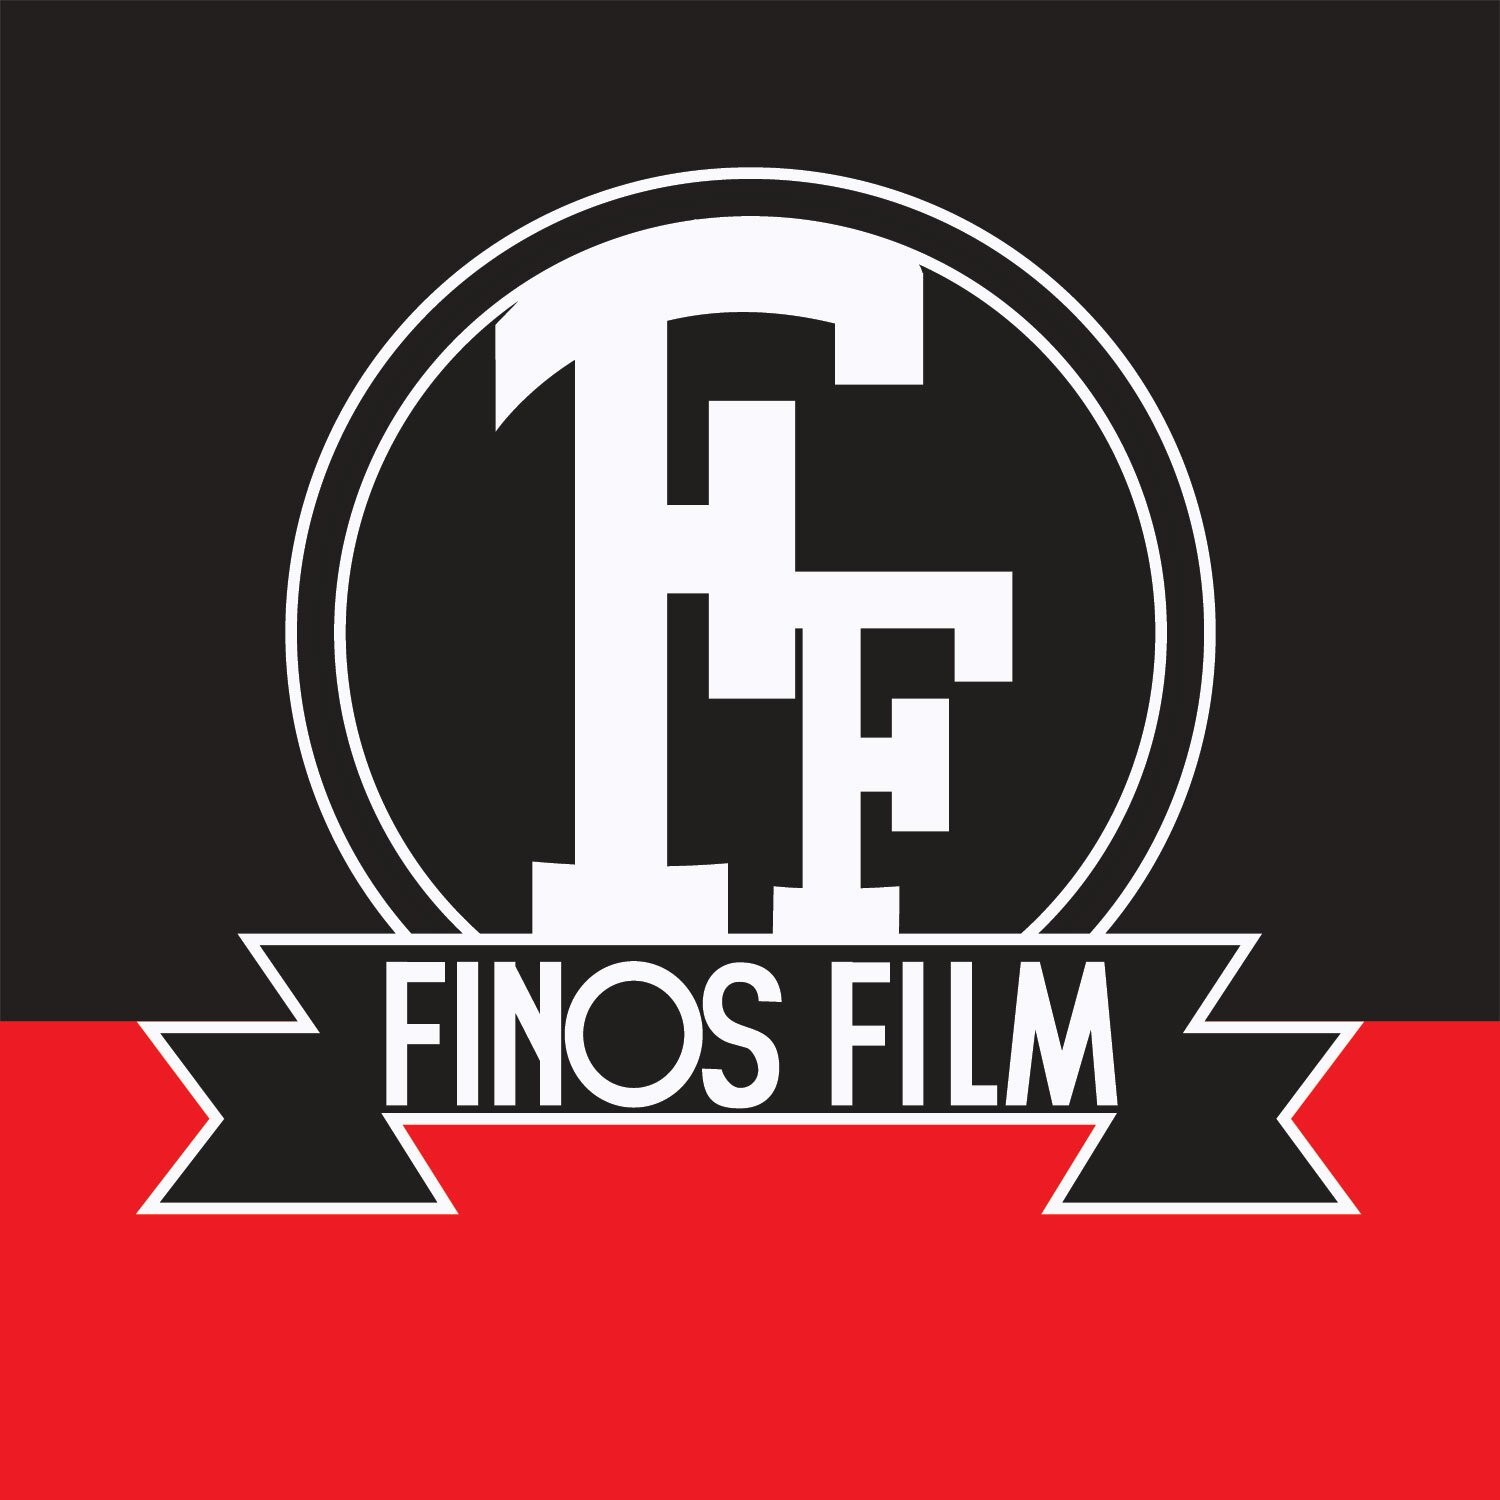 Finos Film: Αυτή είναι η ομάδα που «κρύβεται» πίσω από τα ξεκαρδιστικά βιντεάκια στα social media